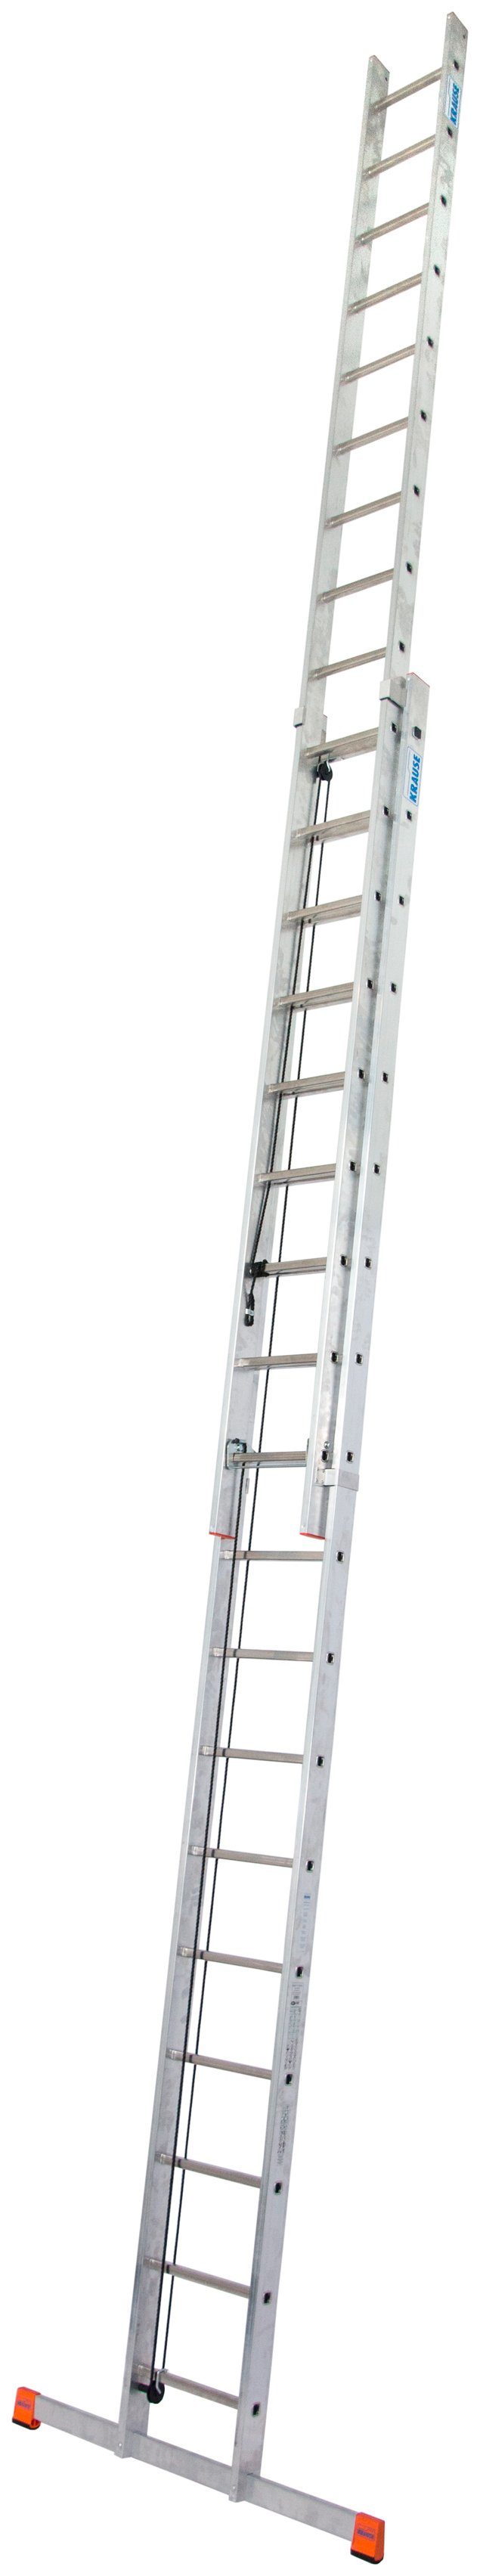 KRAUSE Schiebeleiter Seilzugleiter Robilo, Alu, 2x18 Sprossen, Arbeitshöhe ca. 980 cm